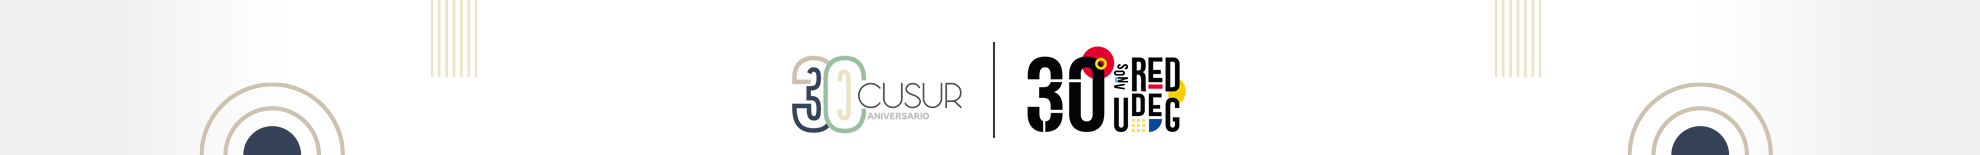 Imagen logotipo de los 30 años del CUSur y Red UdeG